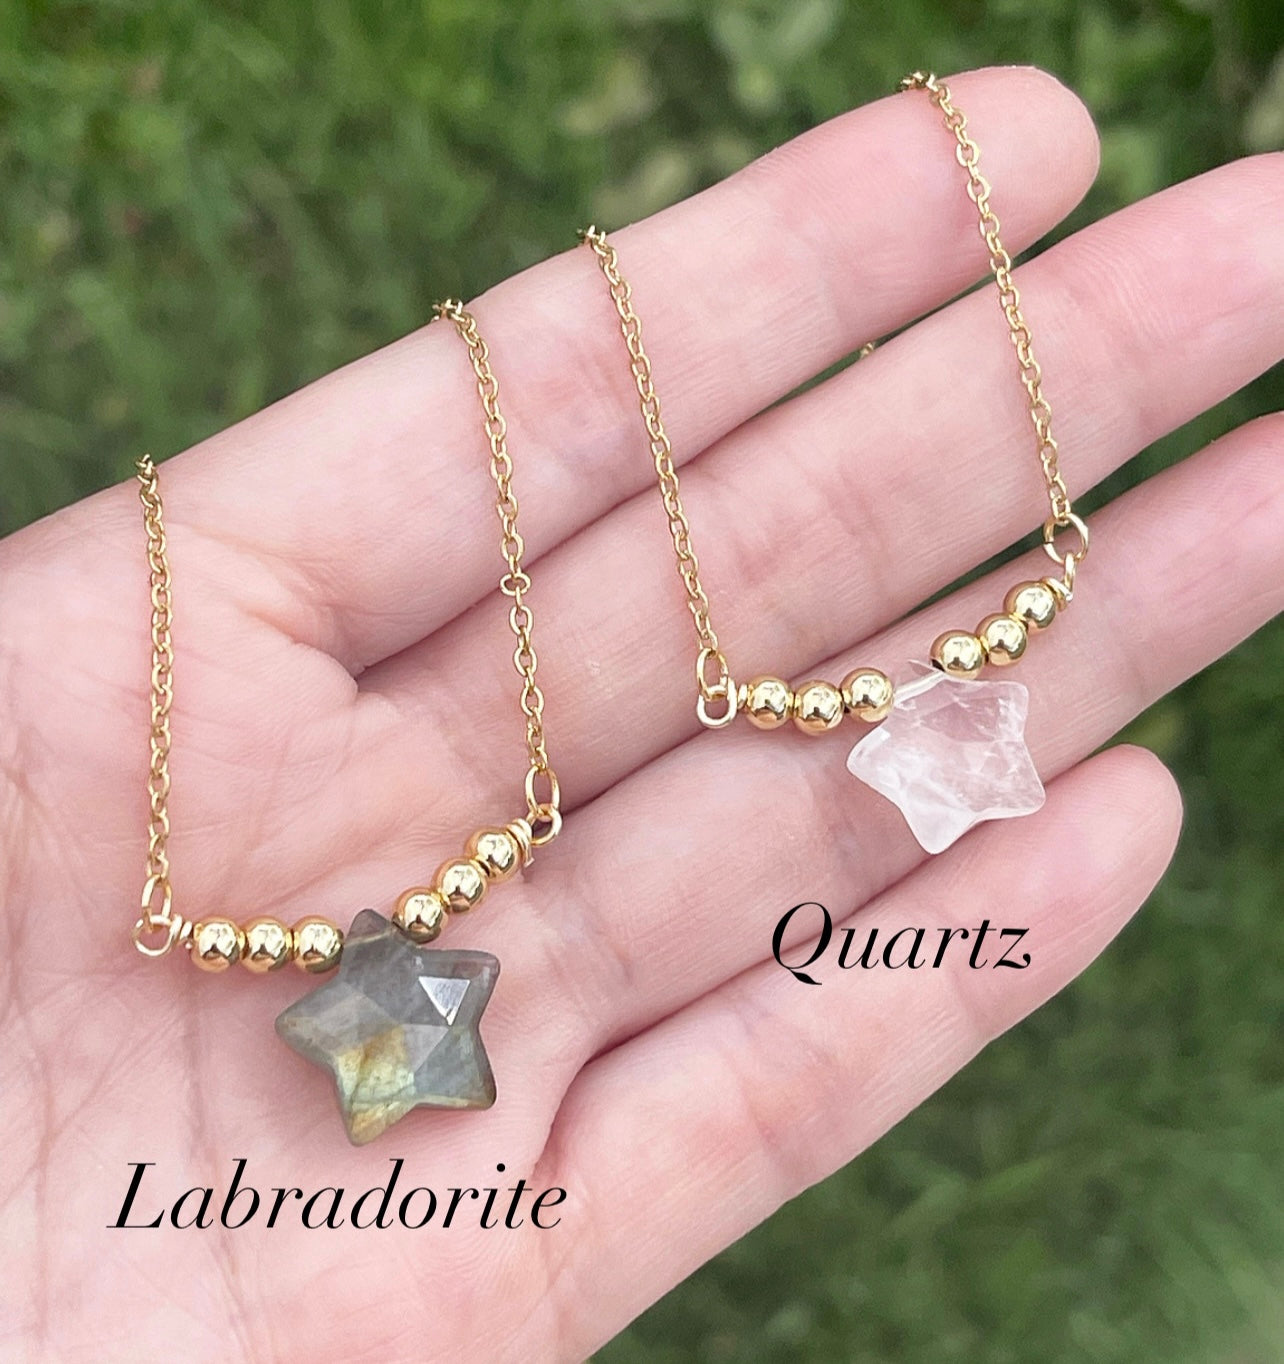 Labradorite or Quartz Star